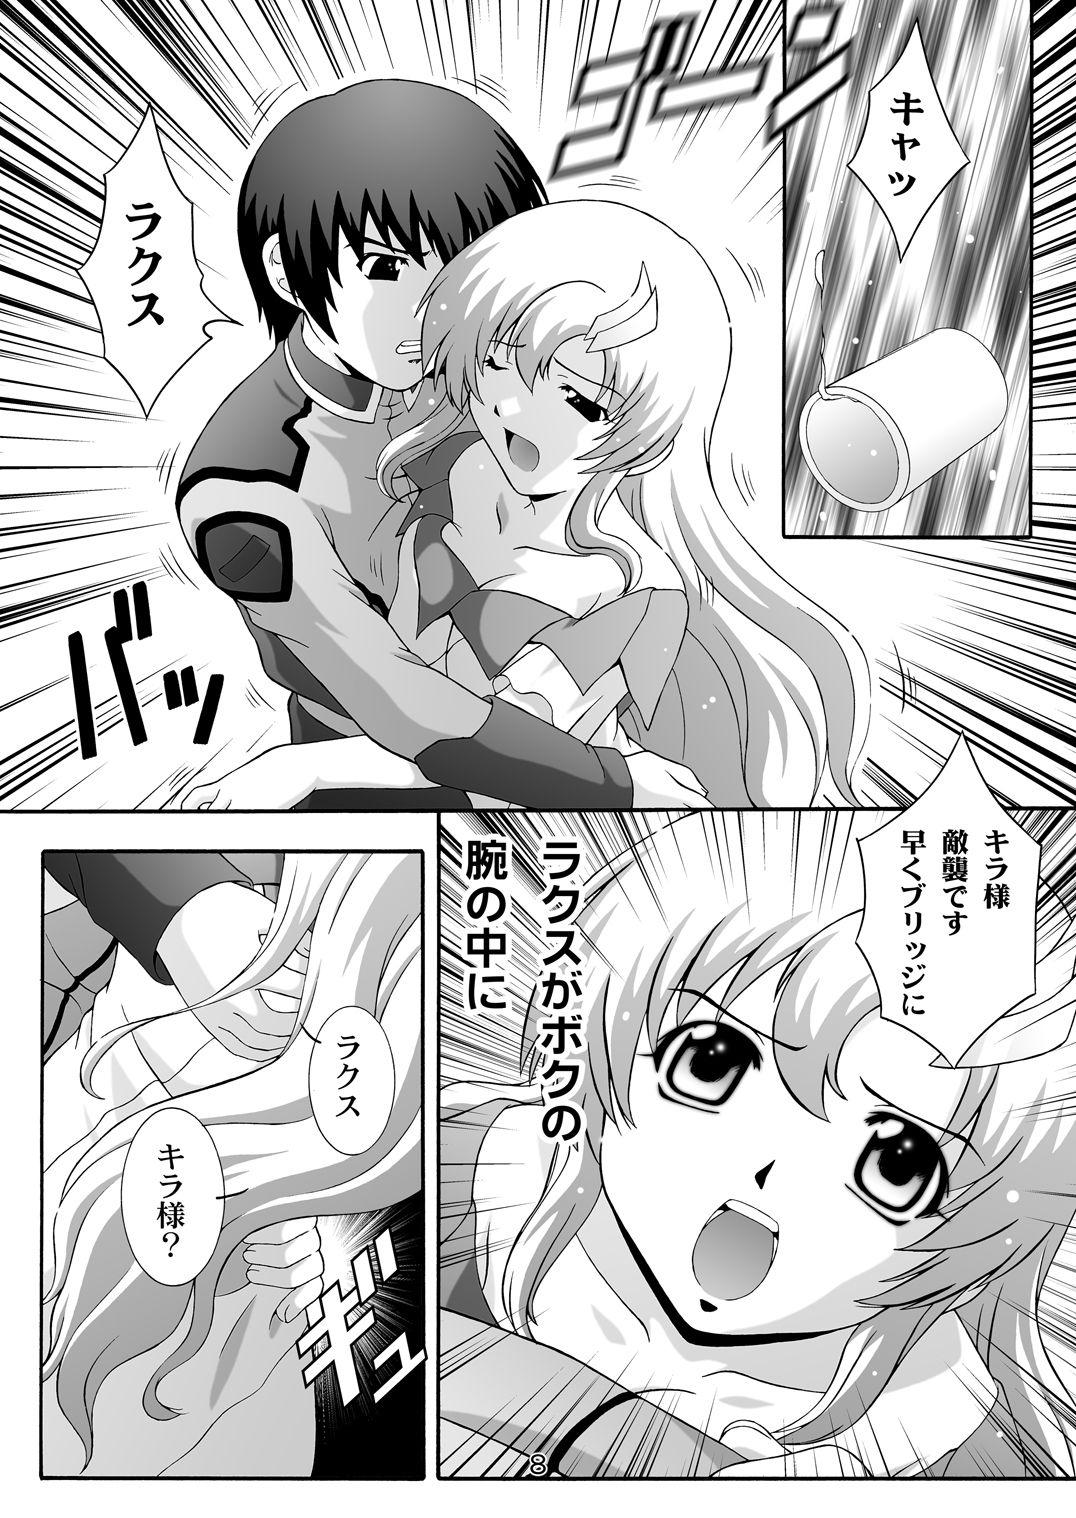 Eng Sub SECRET FILE NEXT 8 - Afternoon Tea - Gundam seed Flashing - Page 8